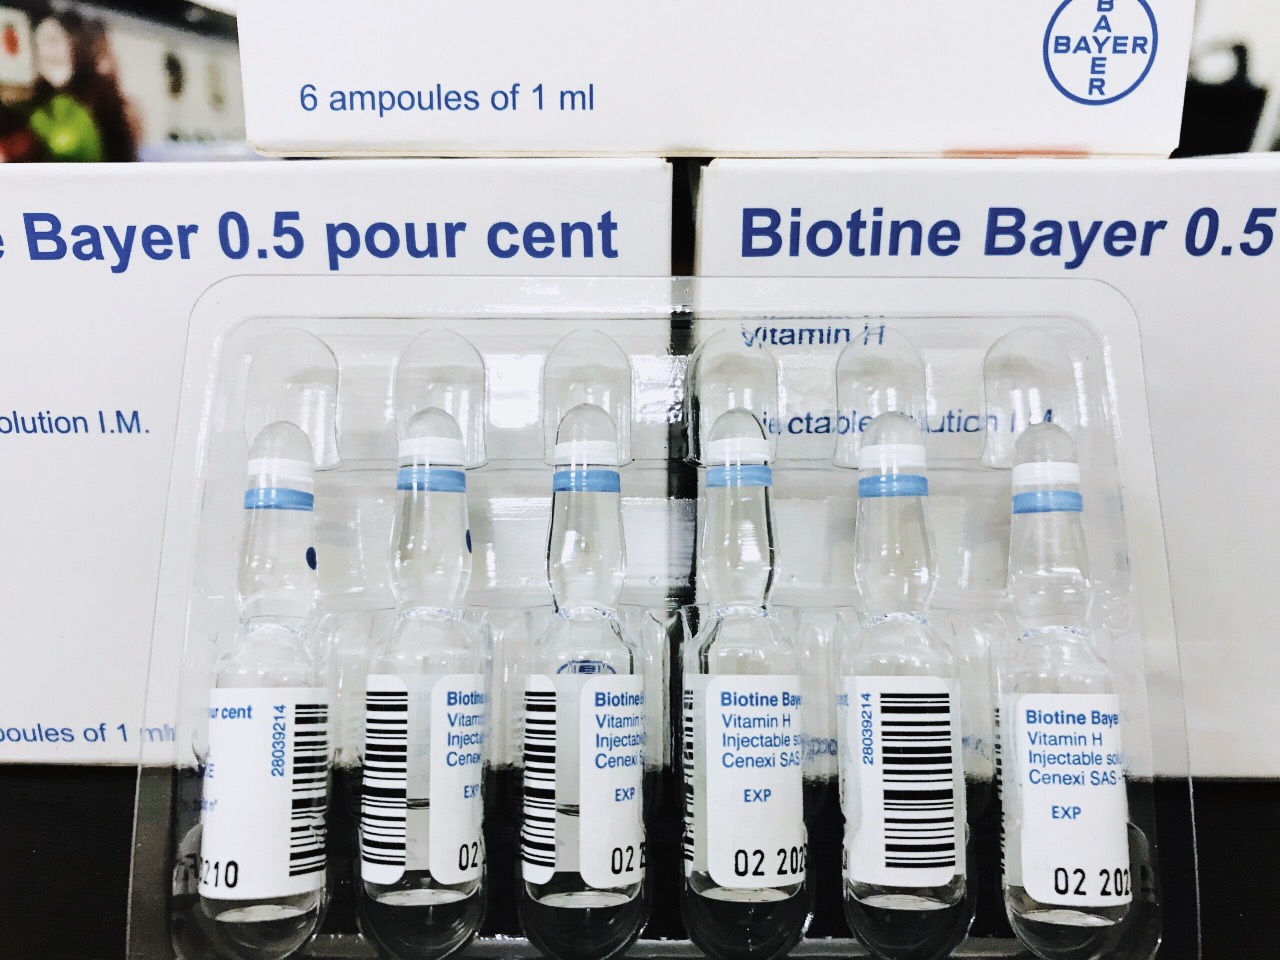 biotine-bayer-0-5-pour-cent-hop-ong-thuoc-tiem-moc-toc